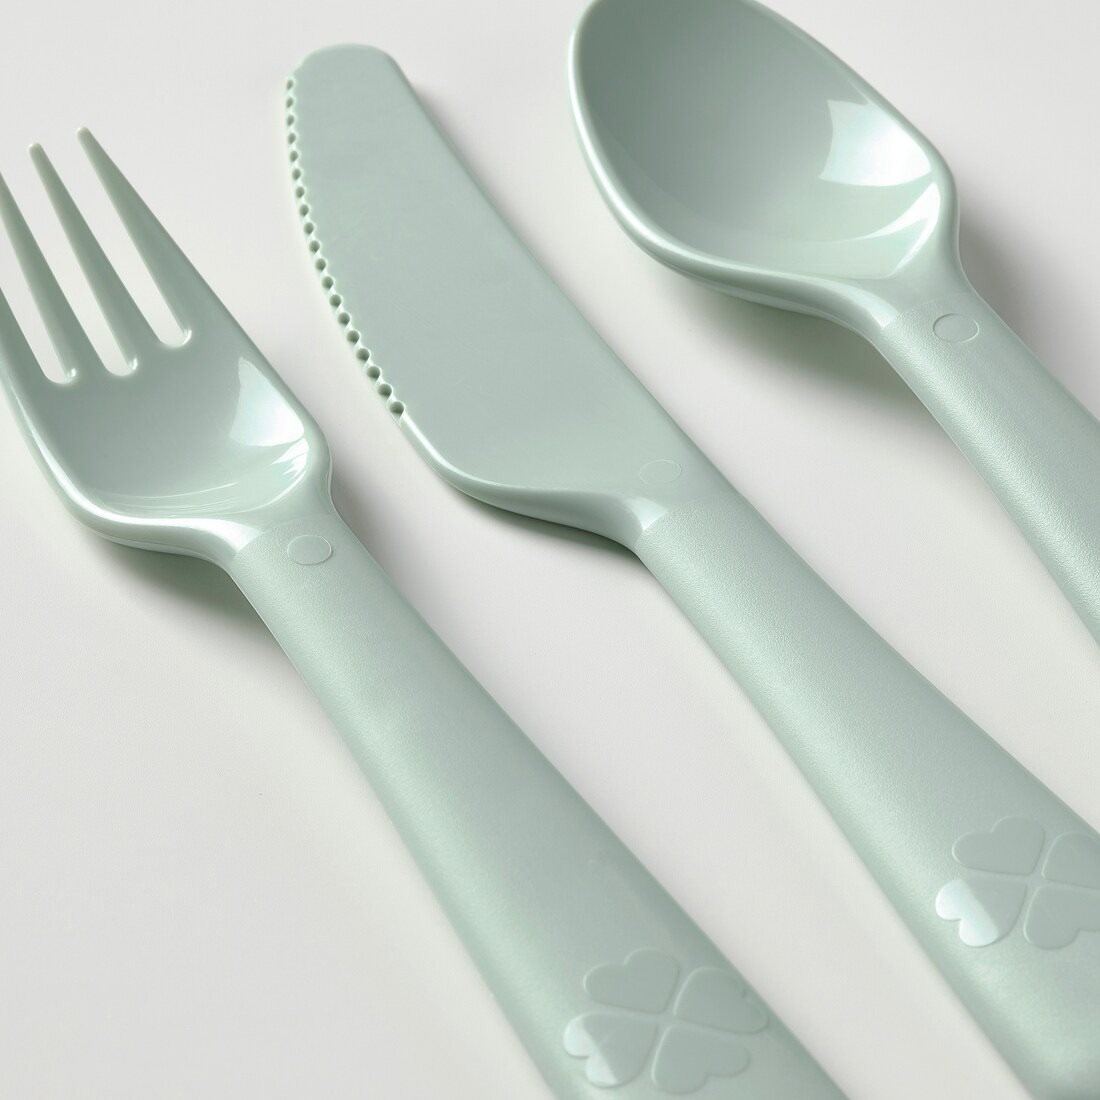 ikea kalas 18-piece cutlery set pastel colors